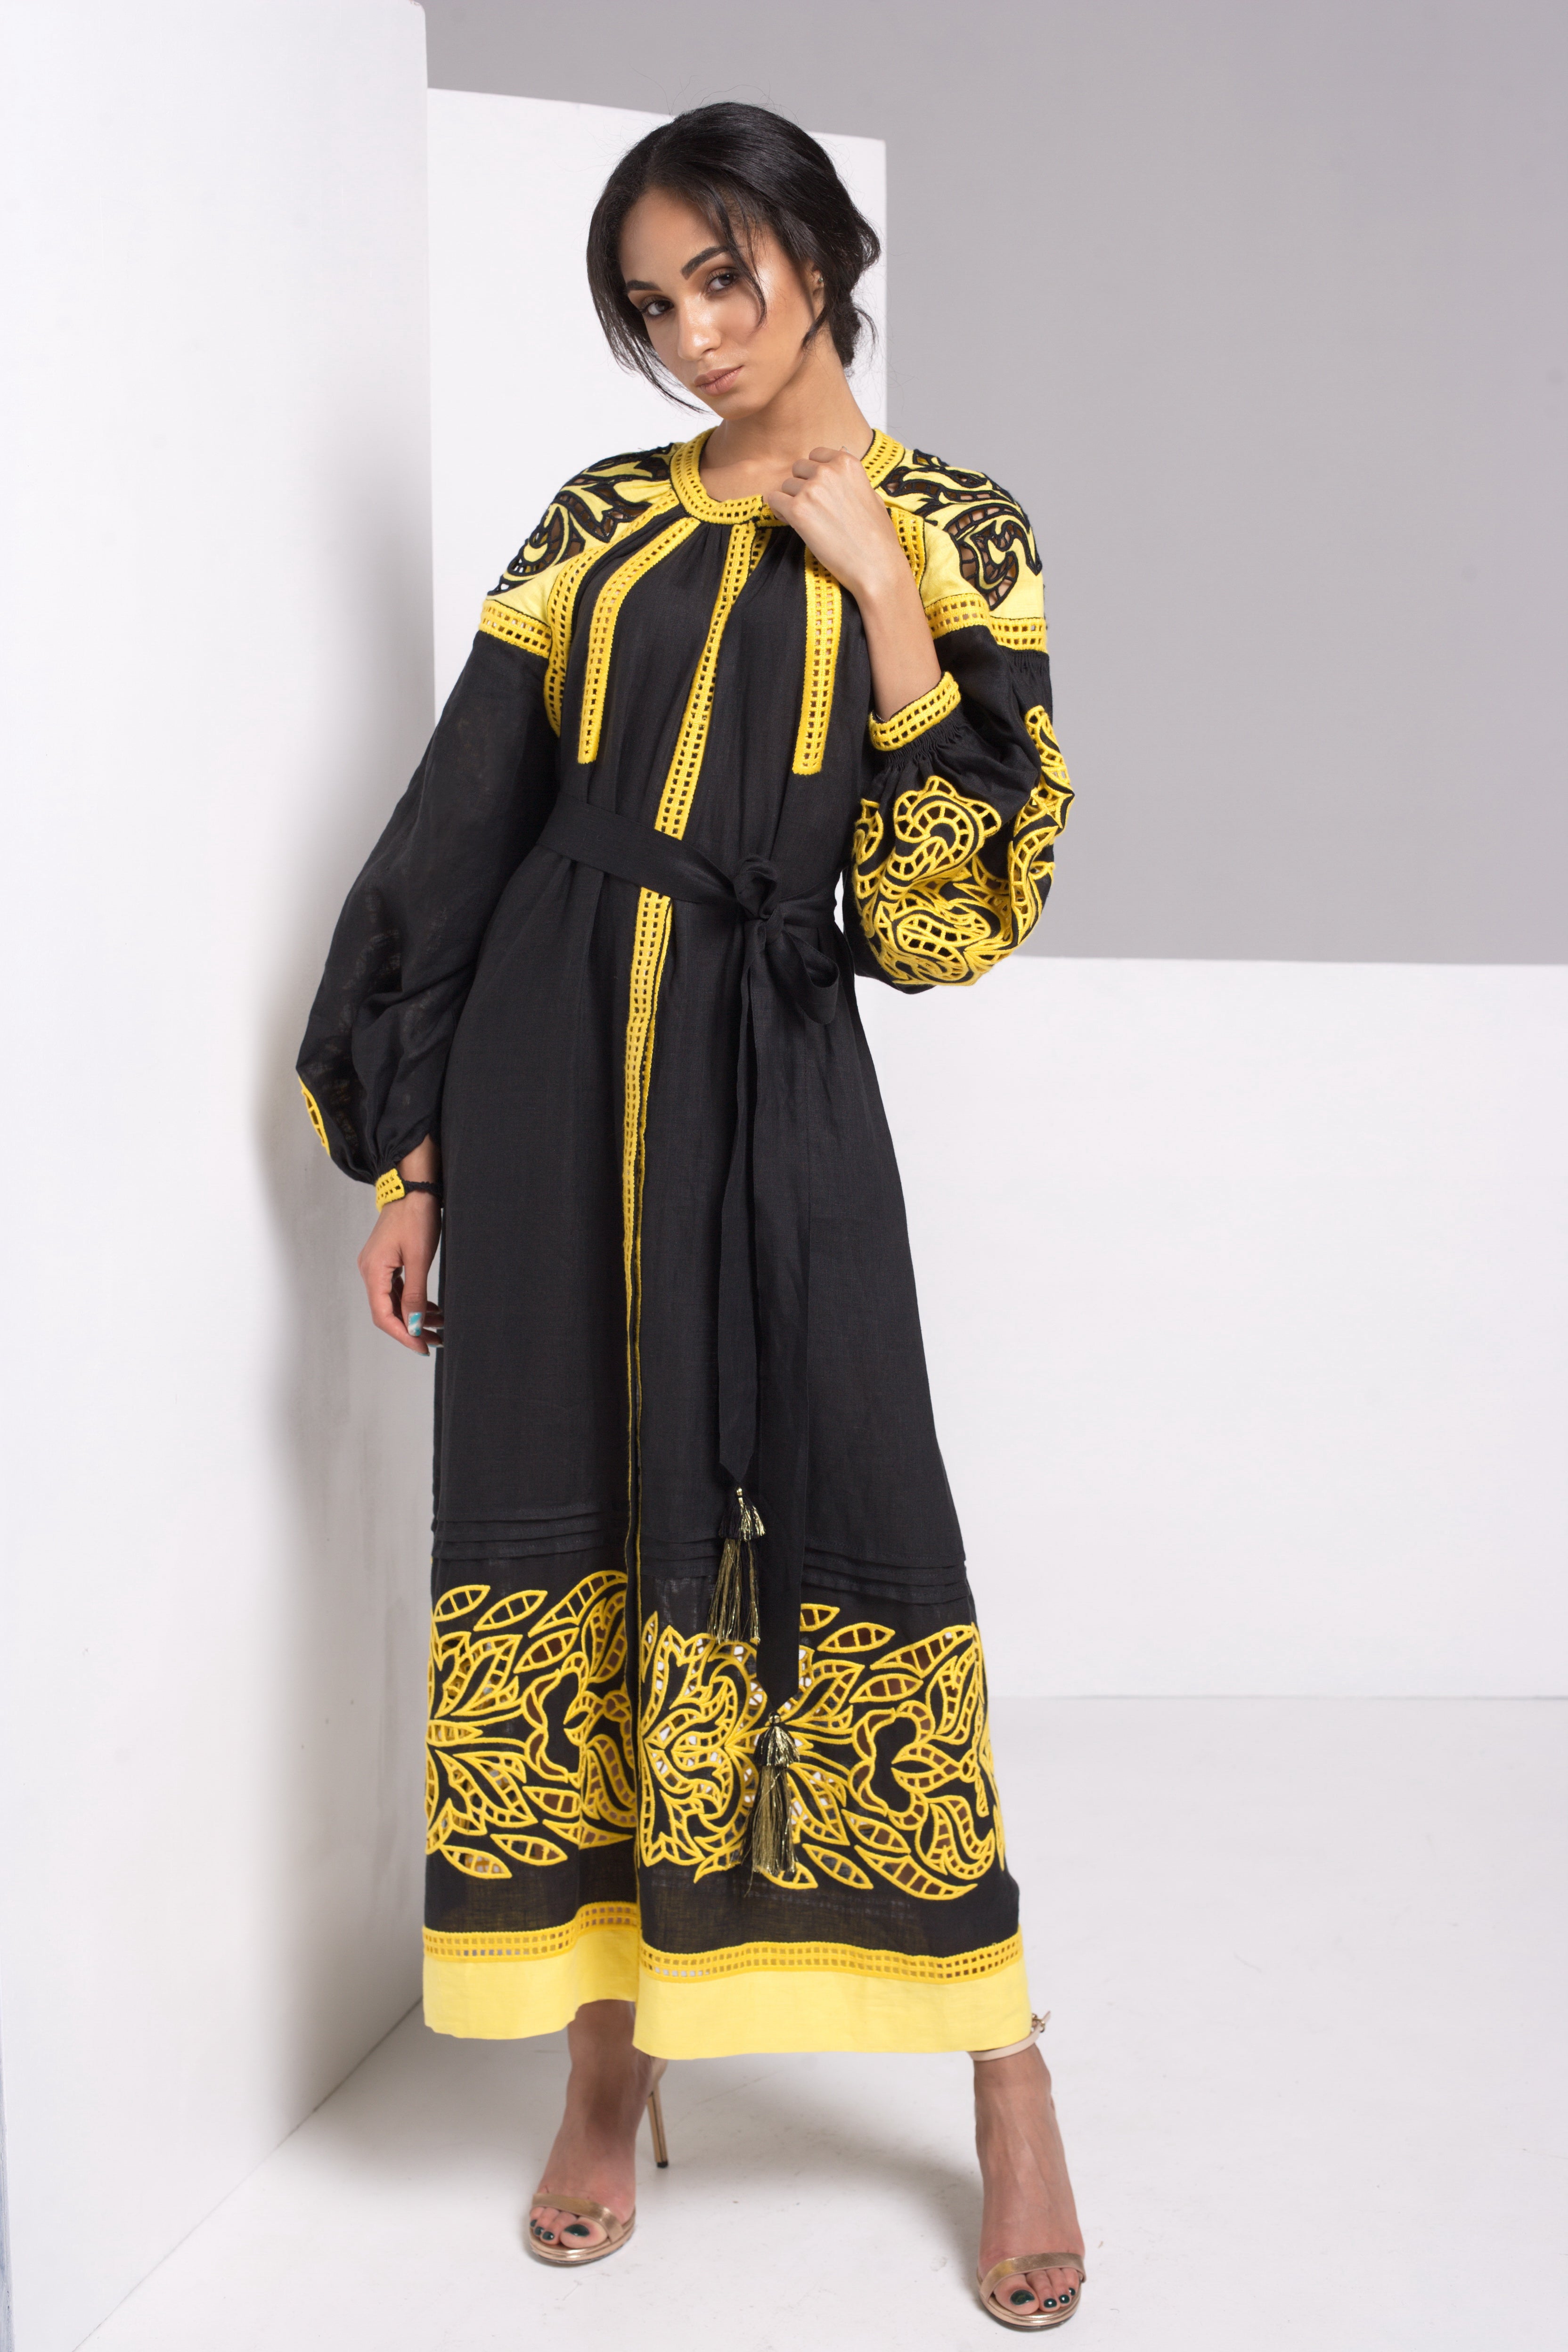 Annabo Barvy Richelieu Black Maxi Dress